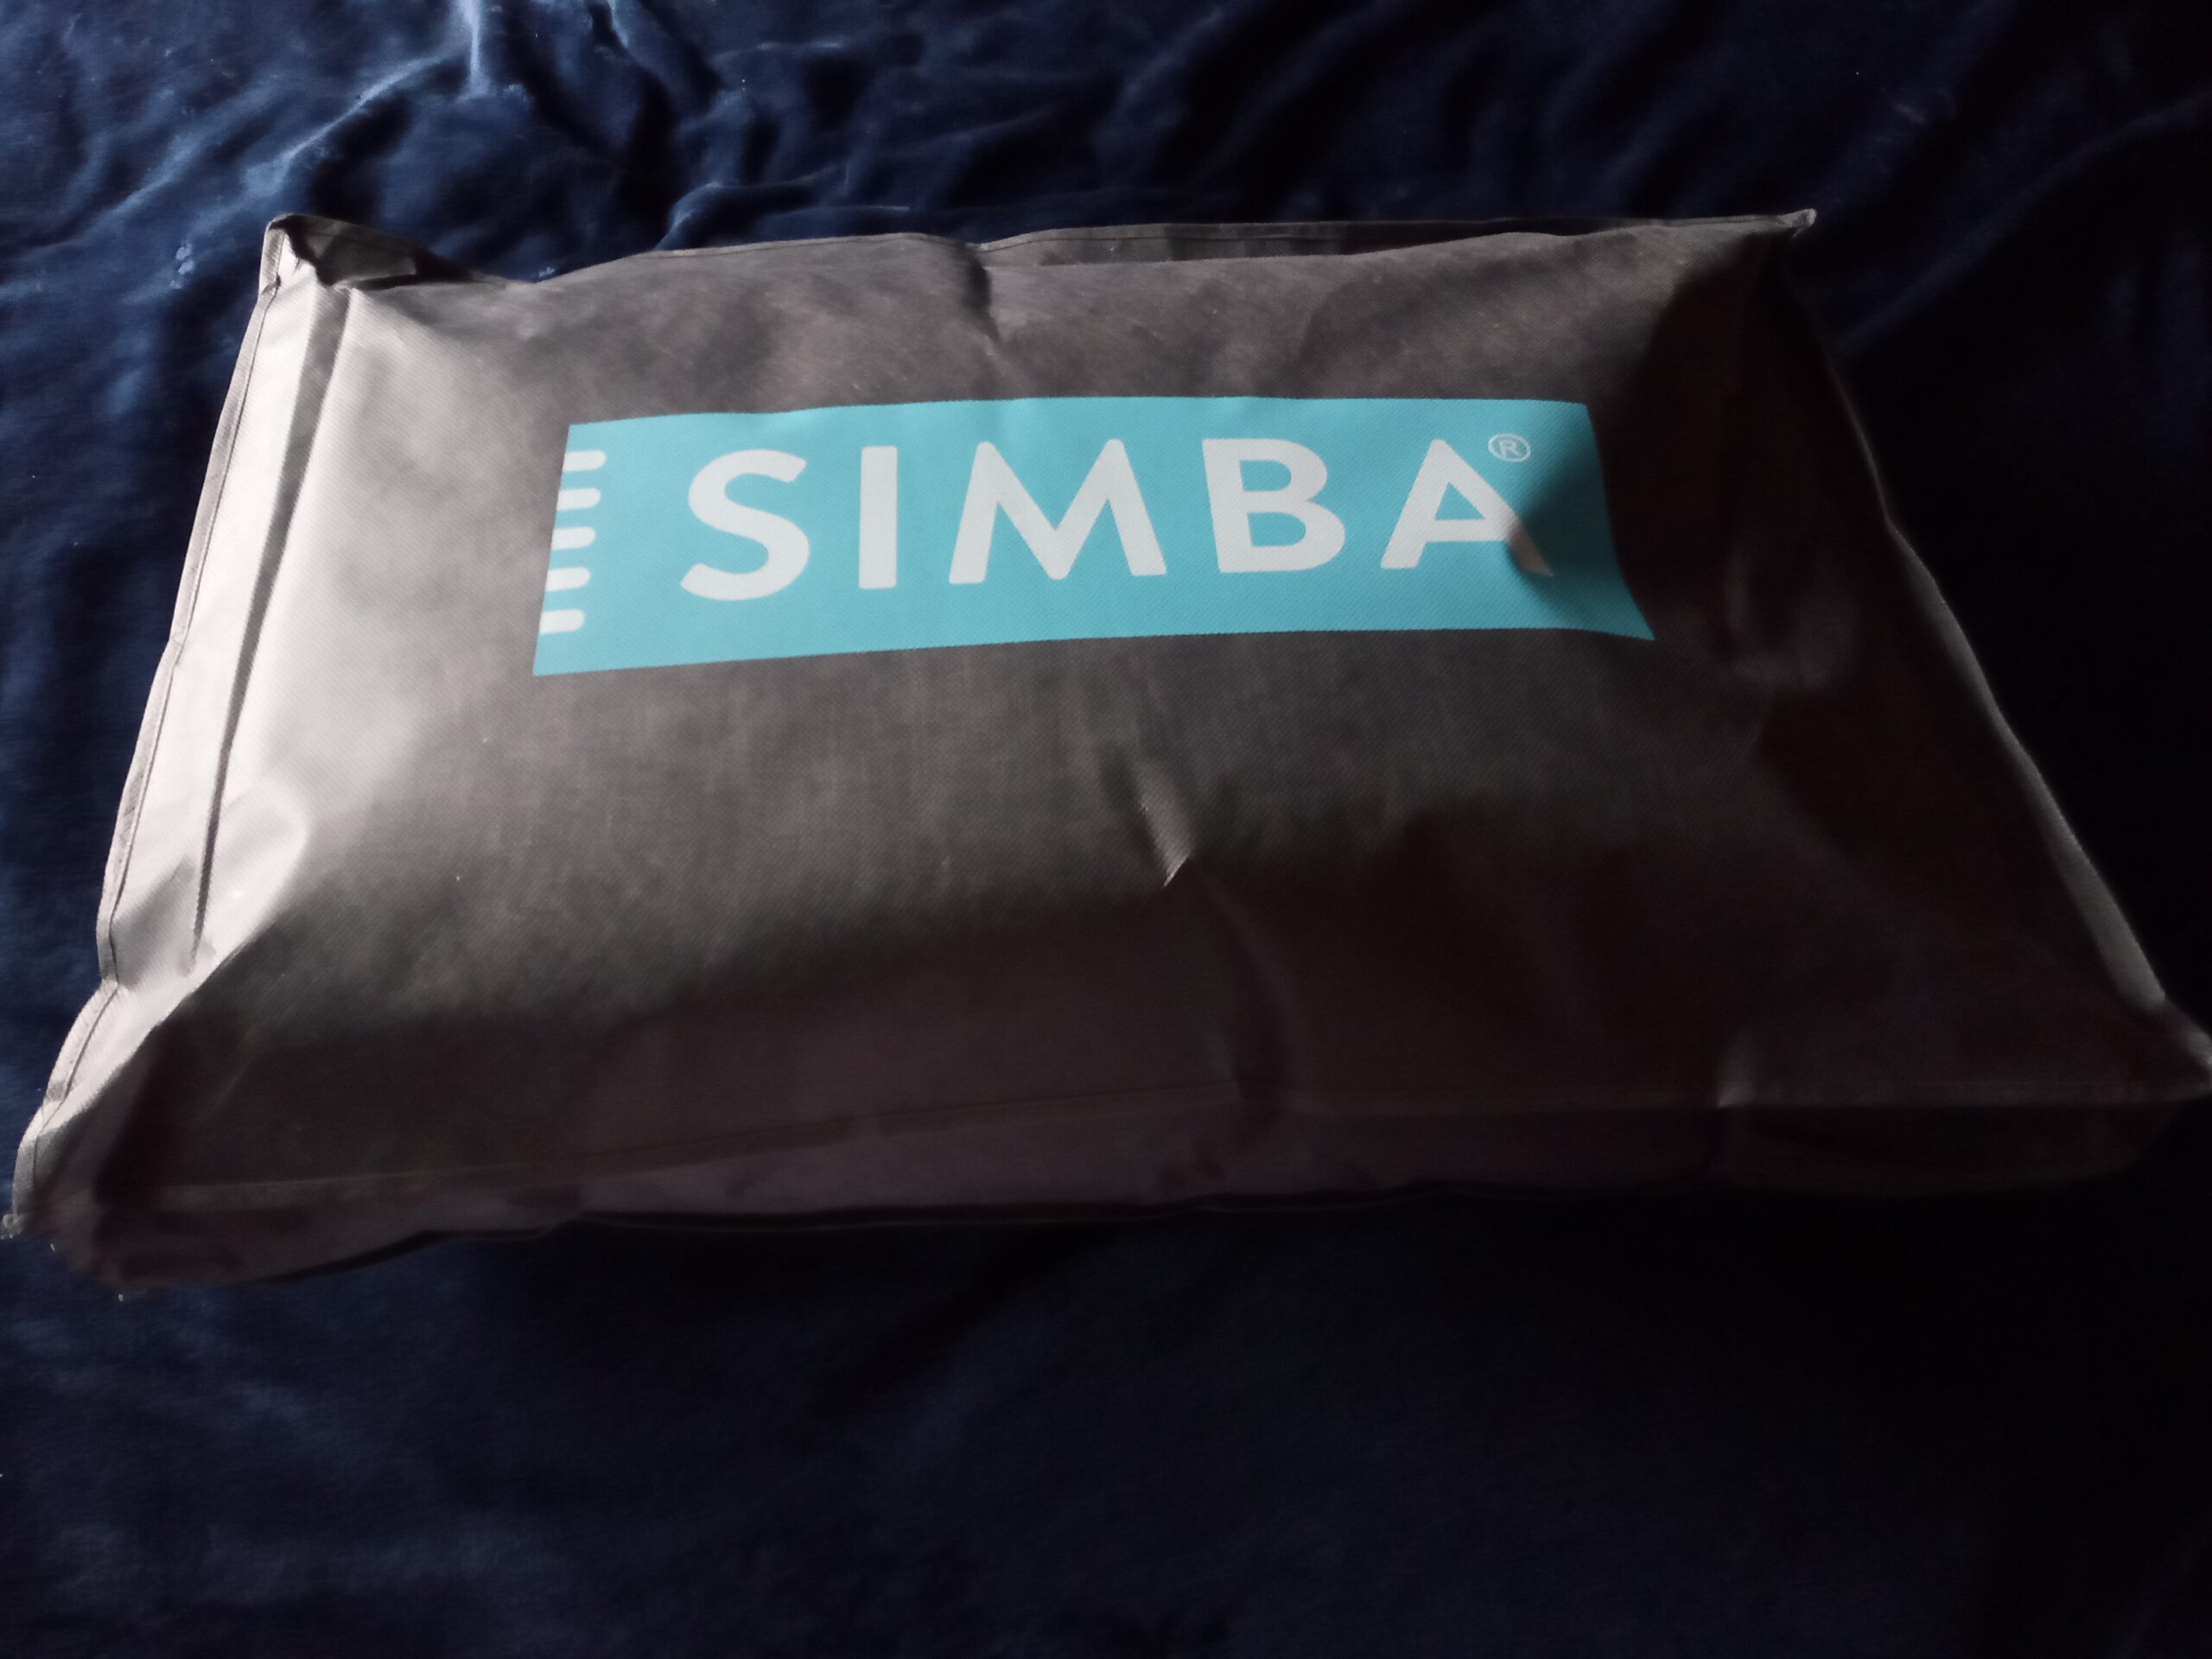 SImba Hybrid Firm Pillow carry bag